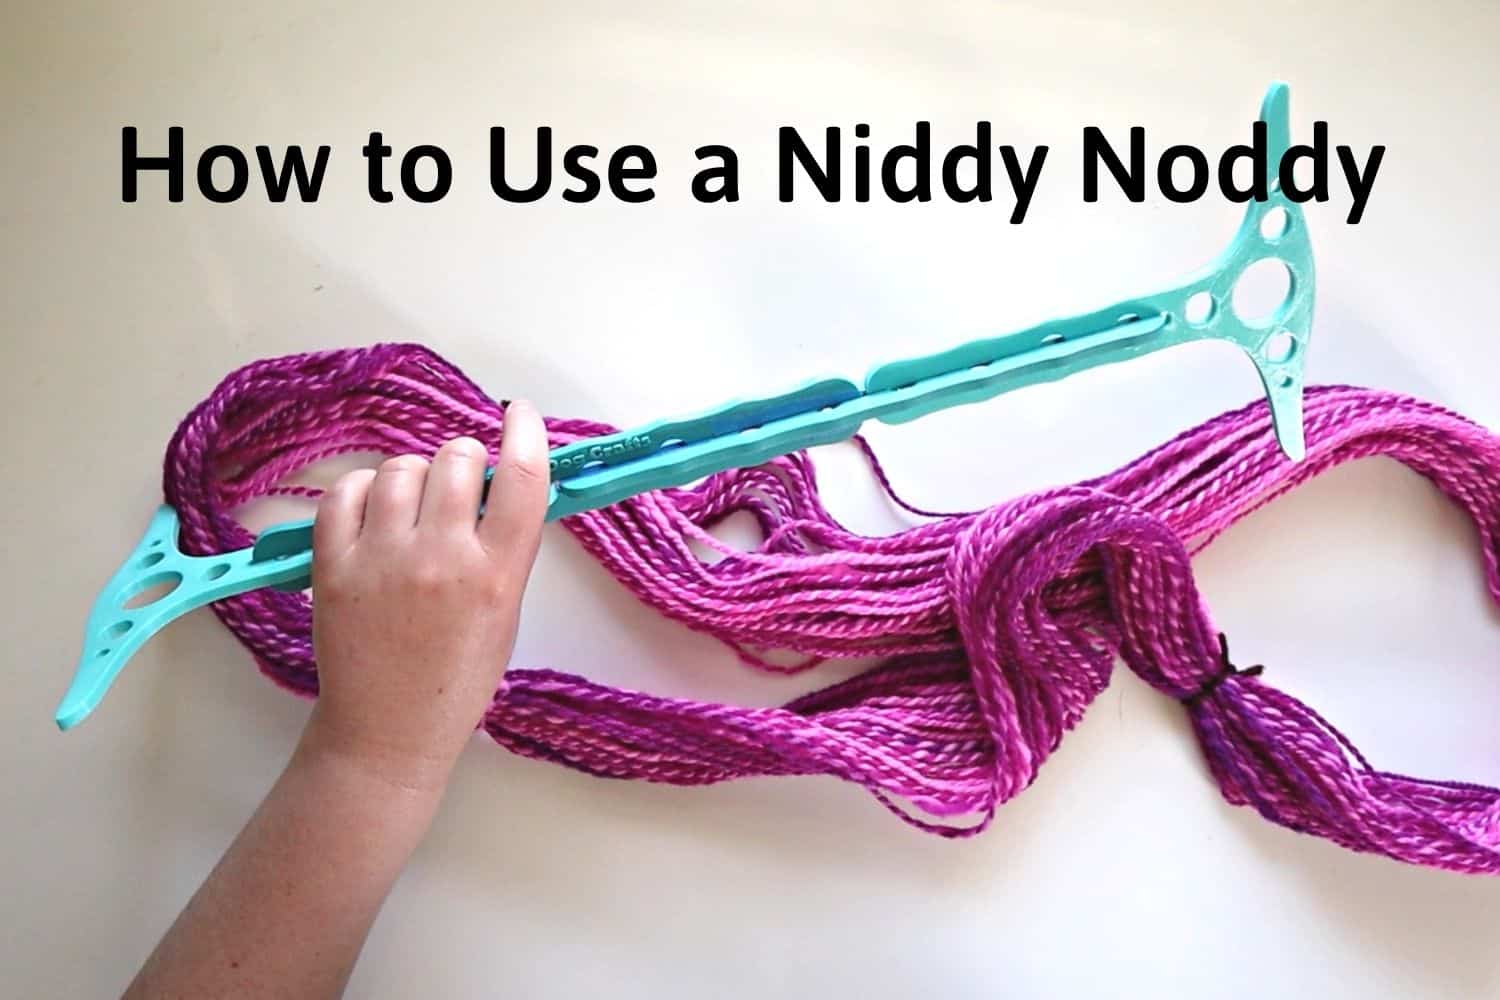 What's a Niddy Noddy